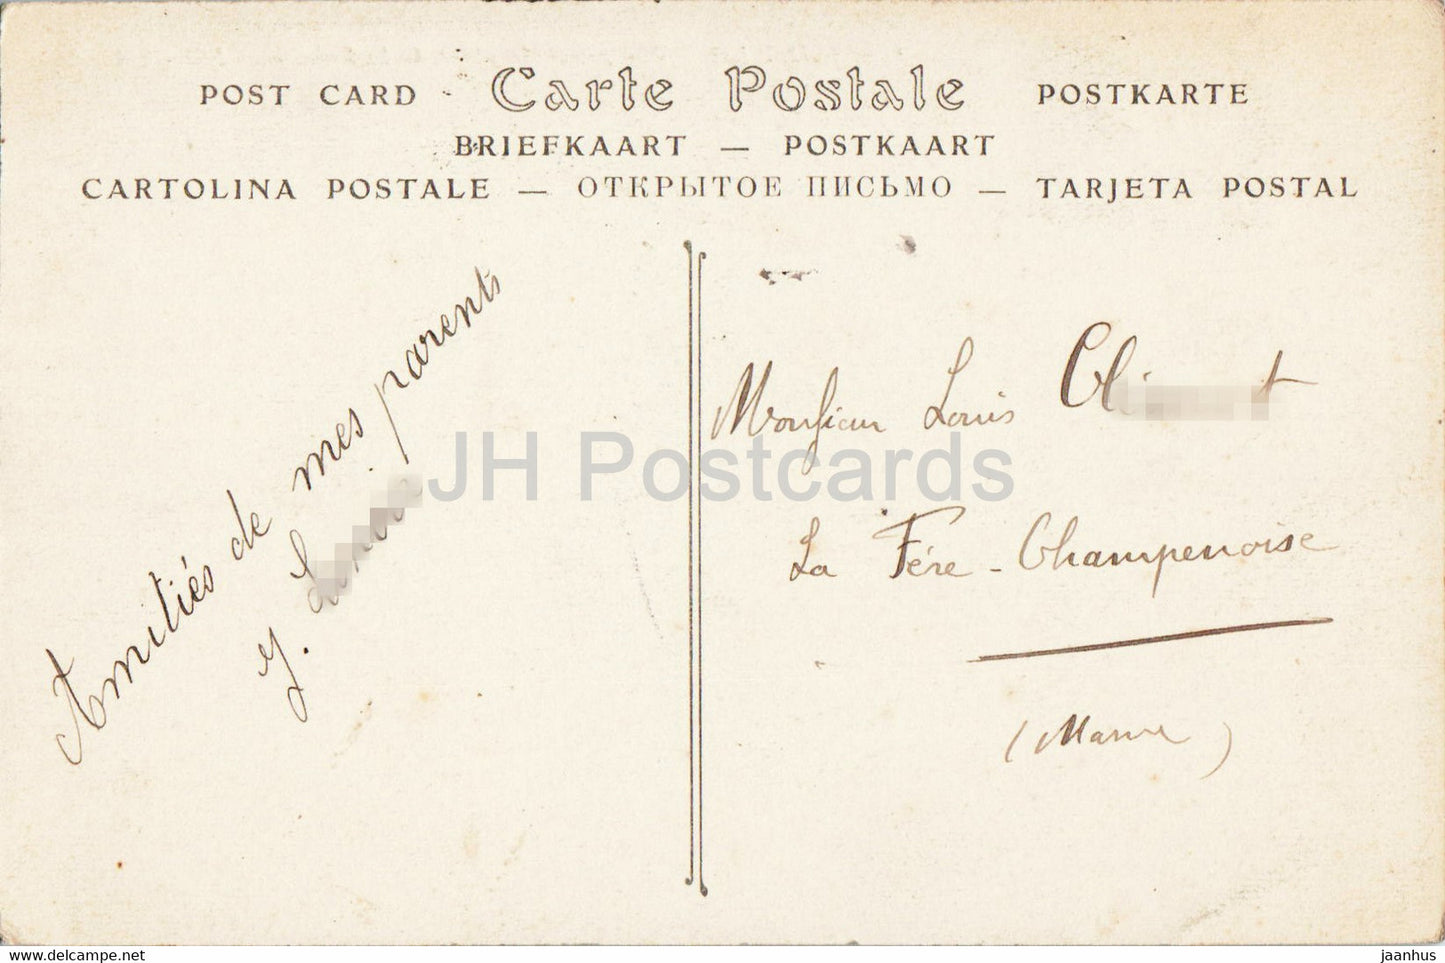 Saint Lo - Vue Générale prise de la Falaise - 1 . carte postale ancienne - 1910 - France - occasion